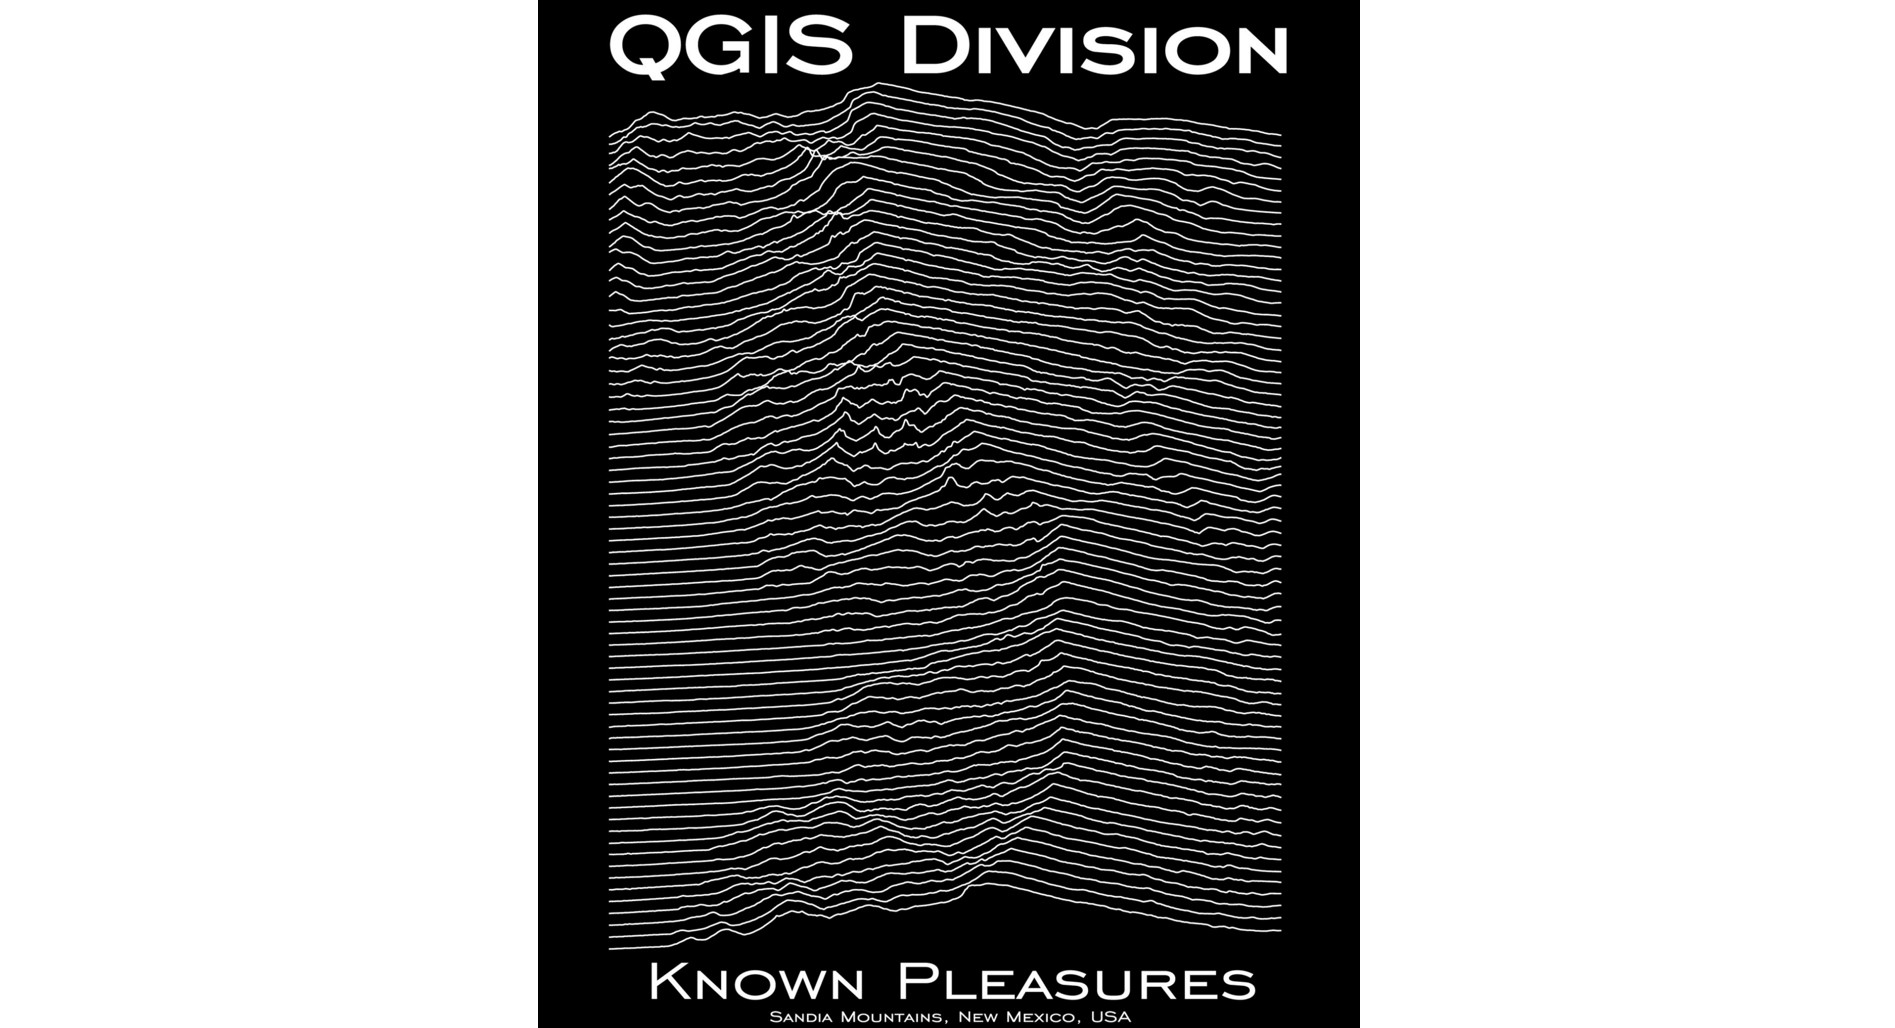 QGIS Division